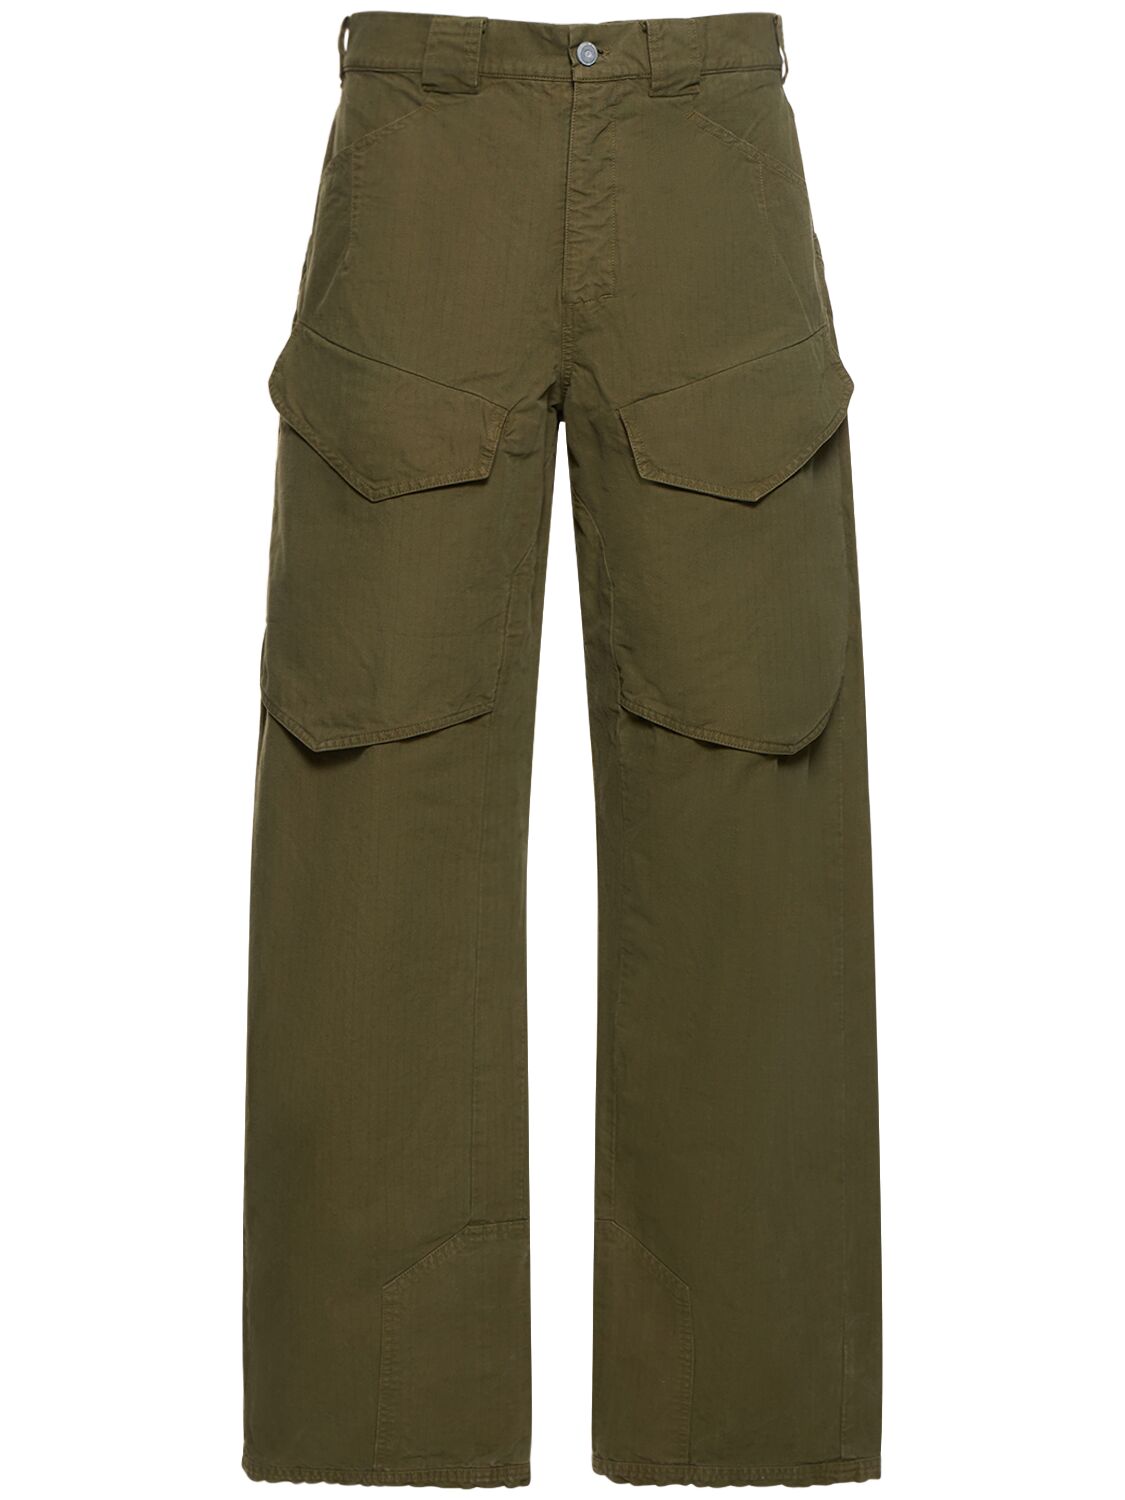 Hiking Organic Cotton Cargo Pants – MEN > CLOTHING > PANTS